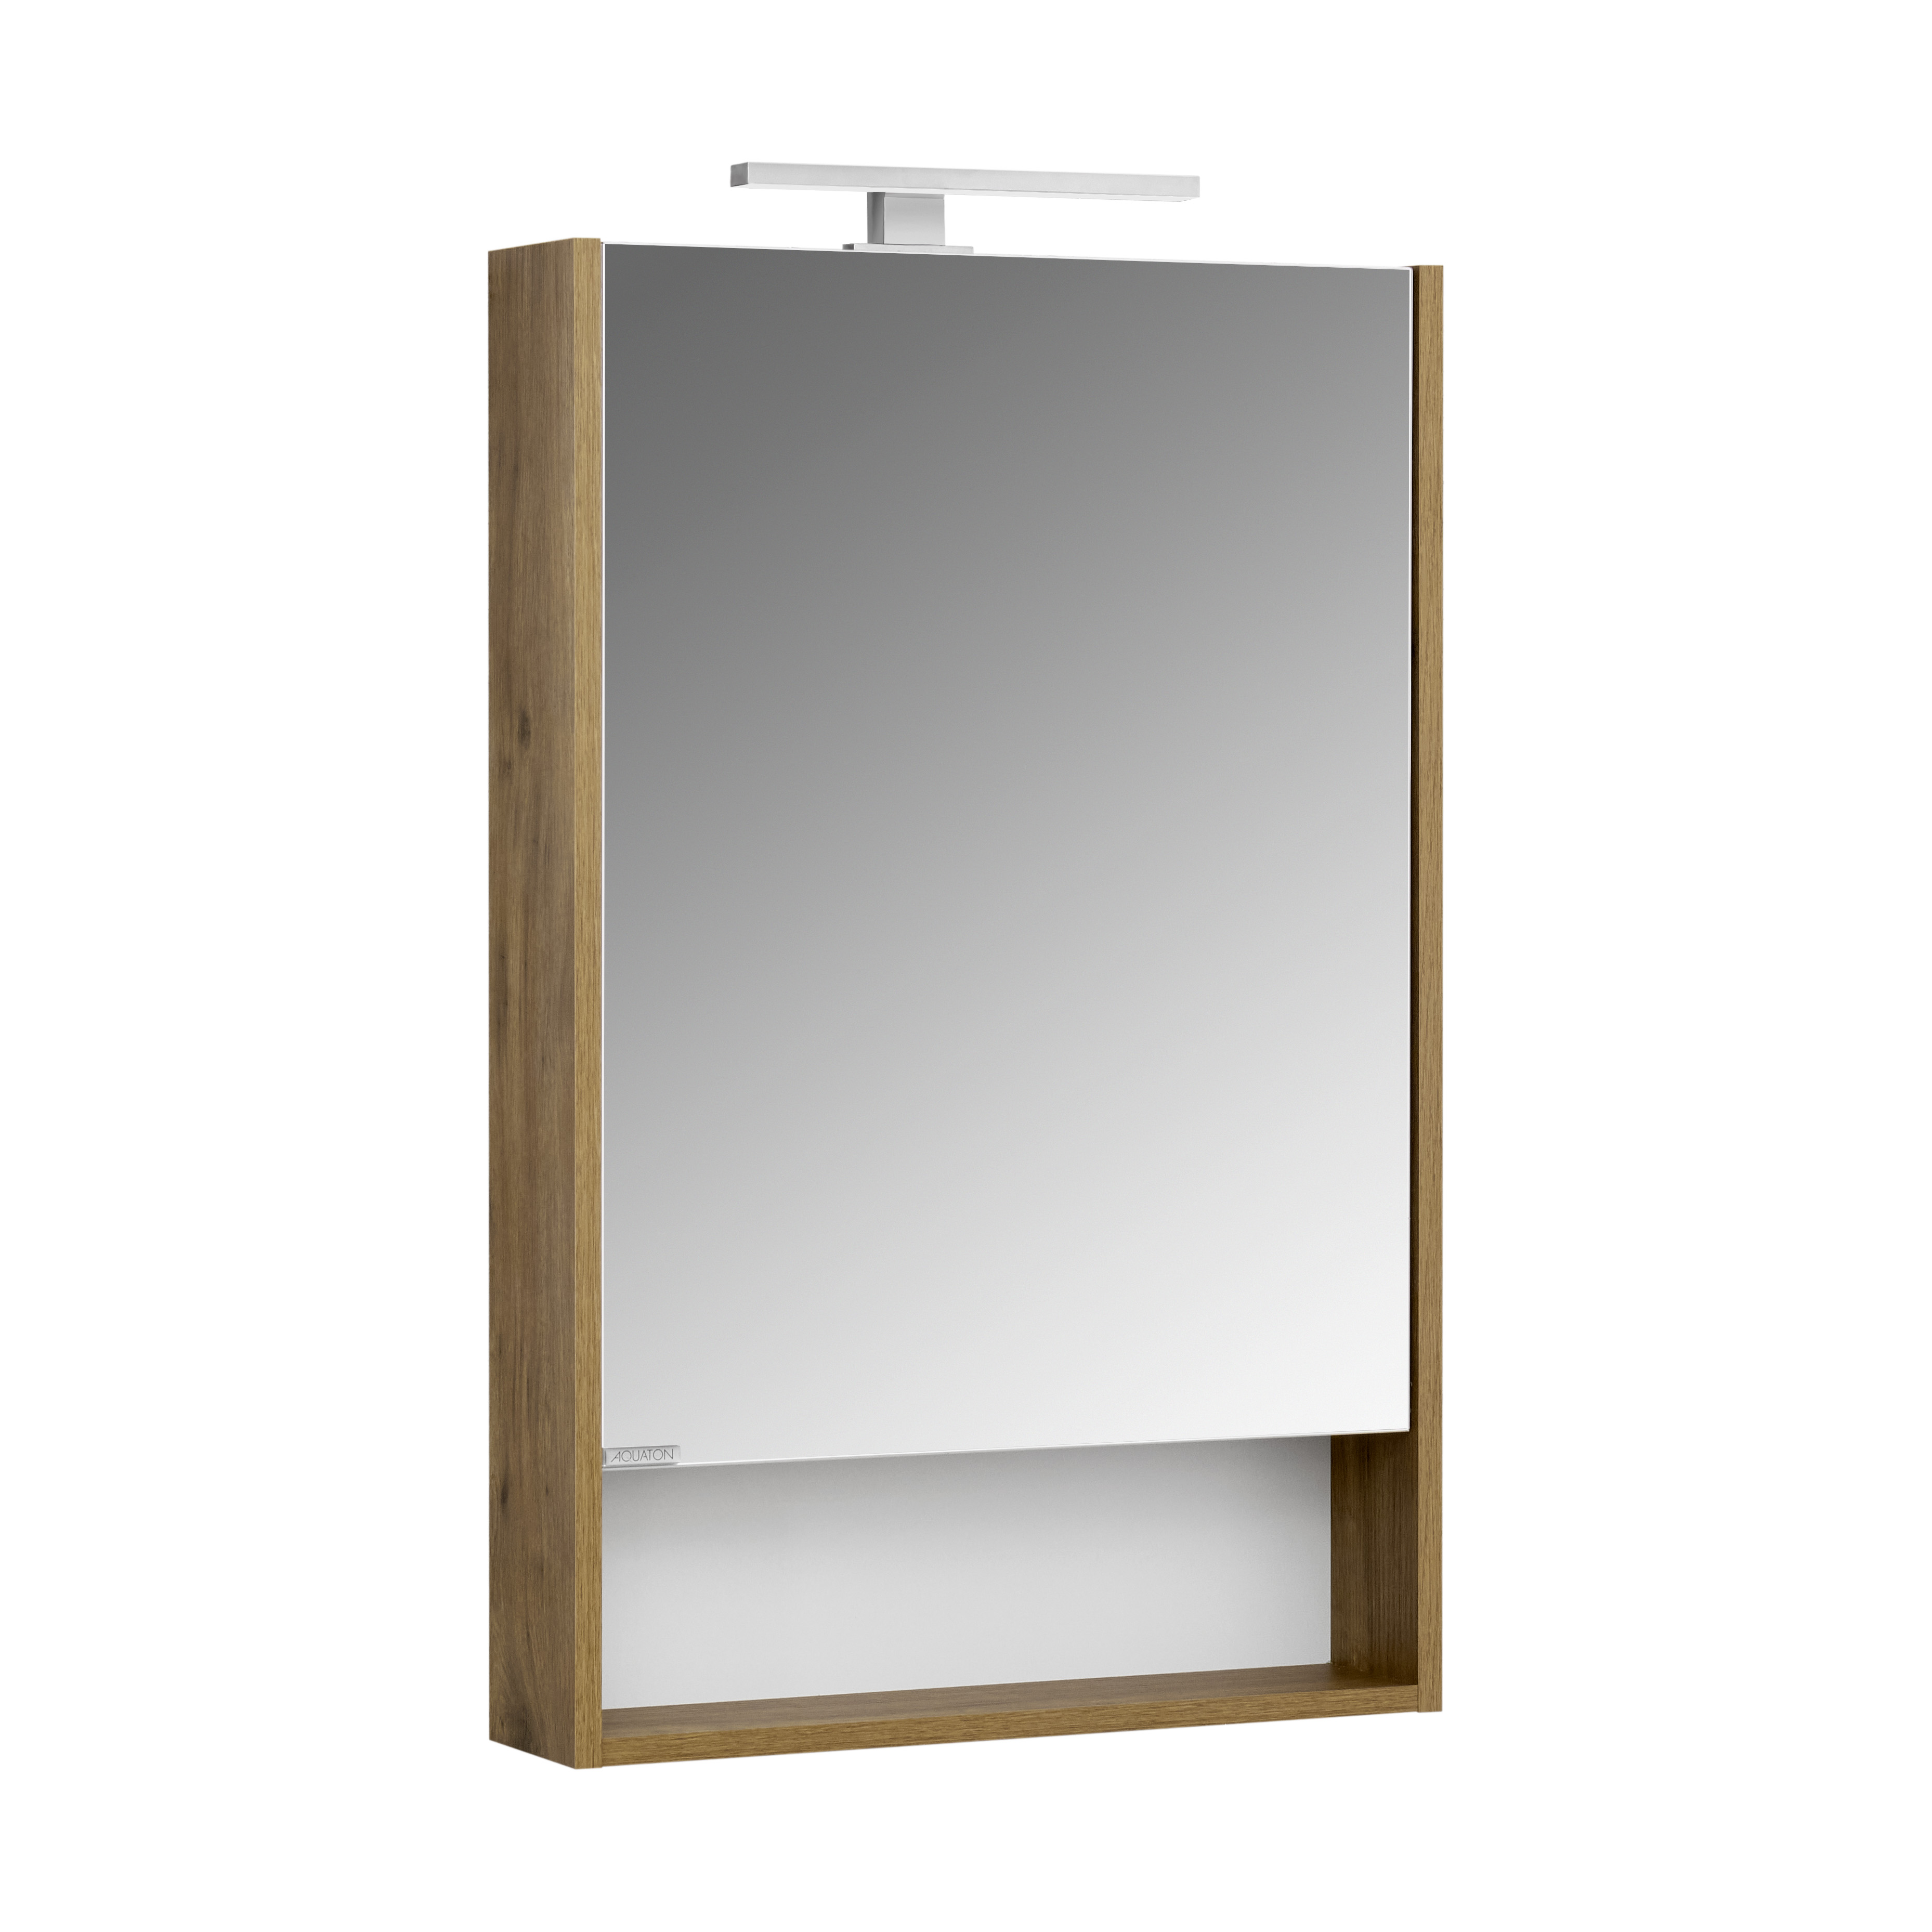 Зеркальный шкаф Акватон Сканди 1A252102SDZ90 55 см, белый - фото 4